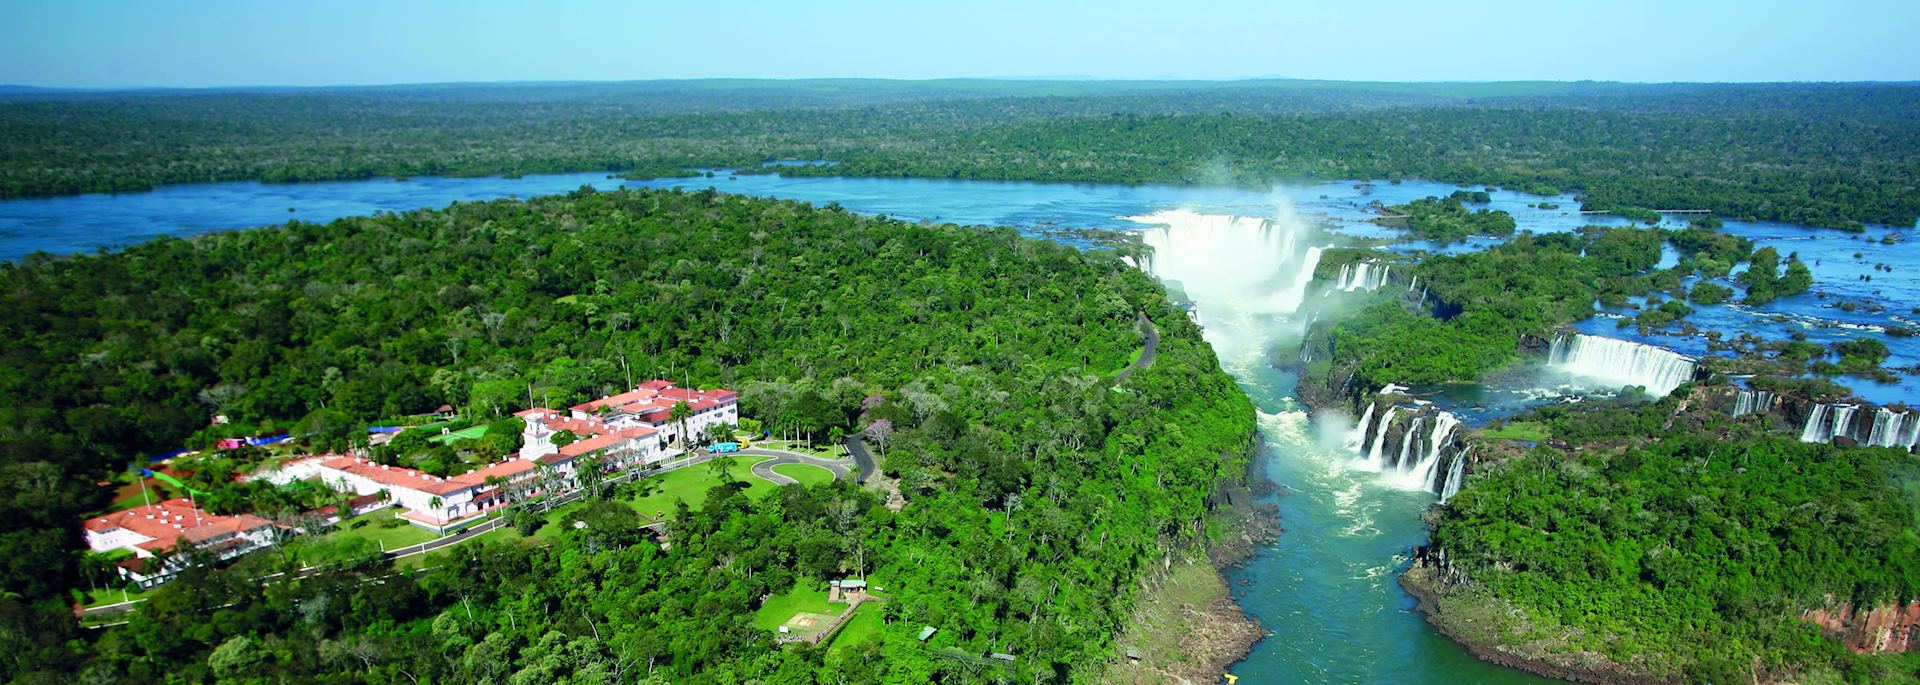 Belmond das Cataratas Hotel, Iguaçu